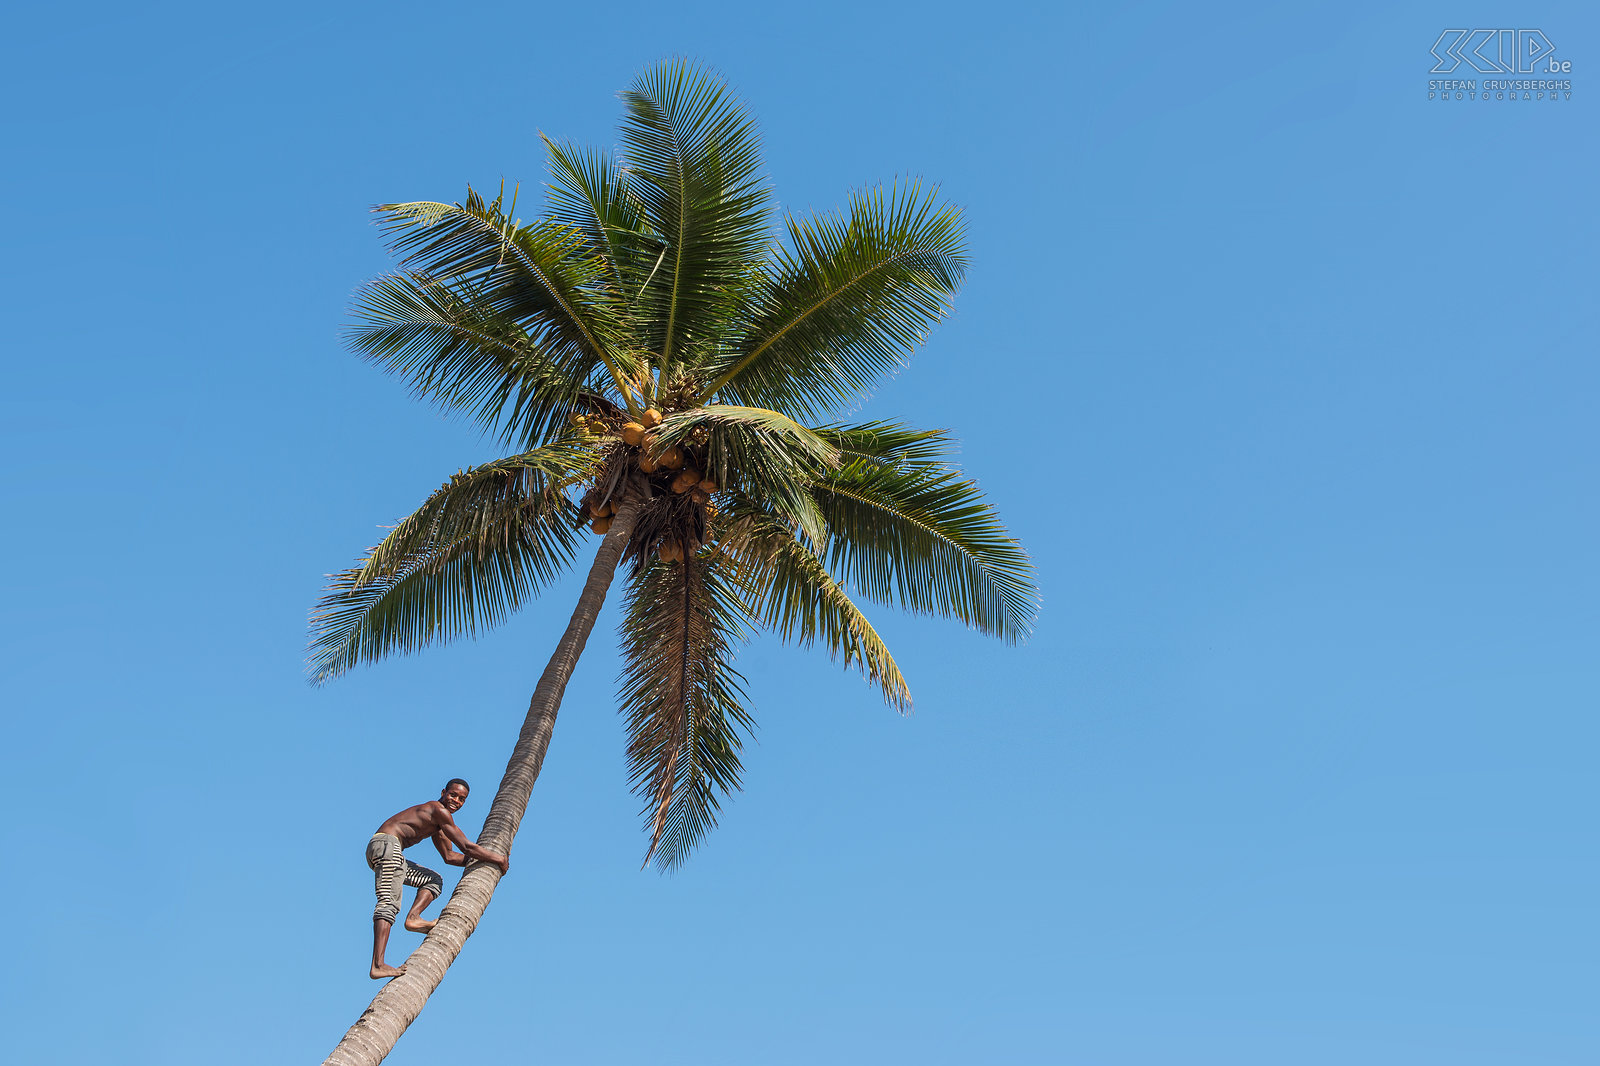 Morondava - Betania Palmbomen met kokosnoten in Betania, een klein vissersdorpje van de Vezo mensen. Stefan Cruysberghs